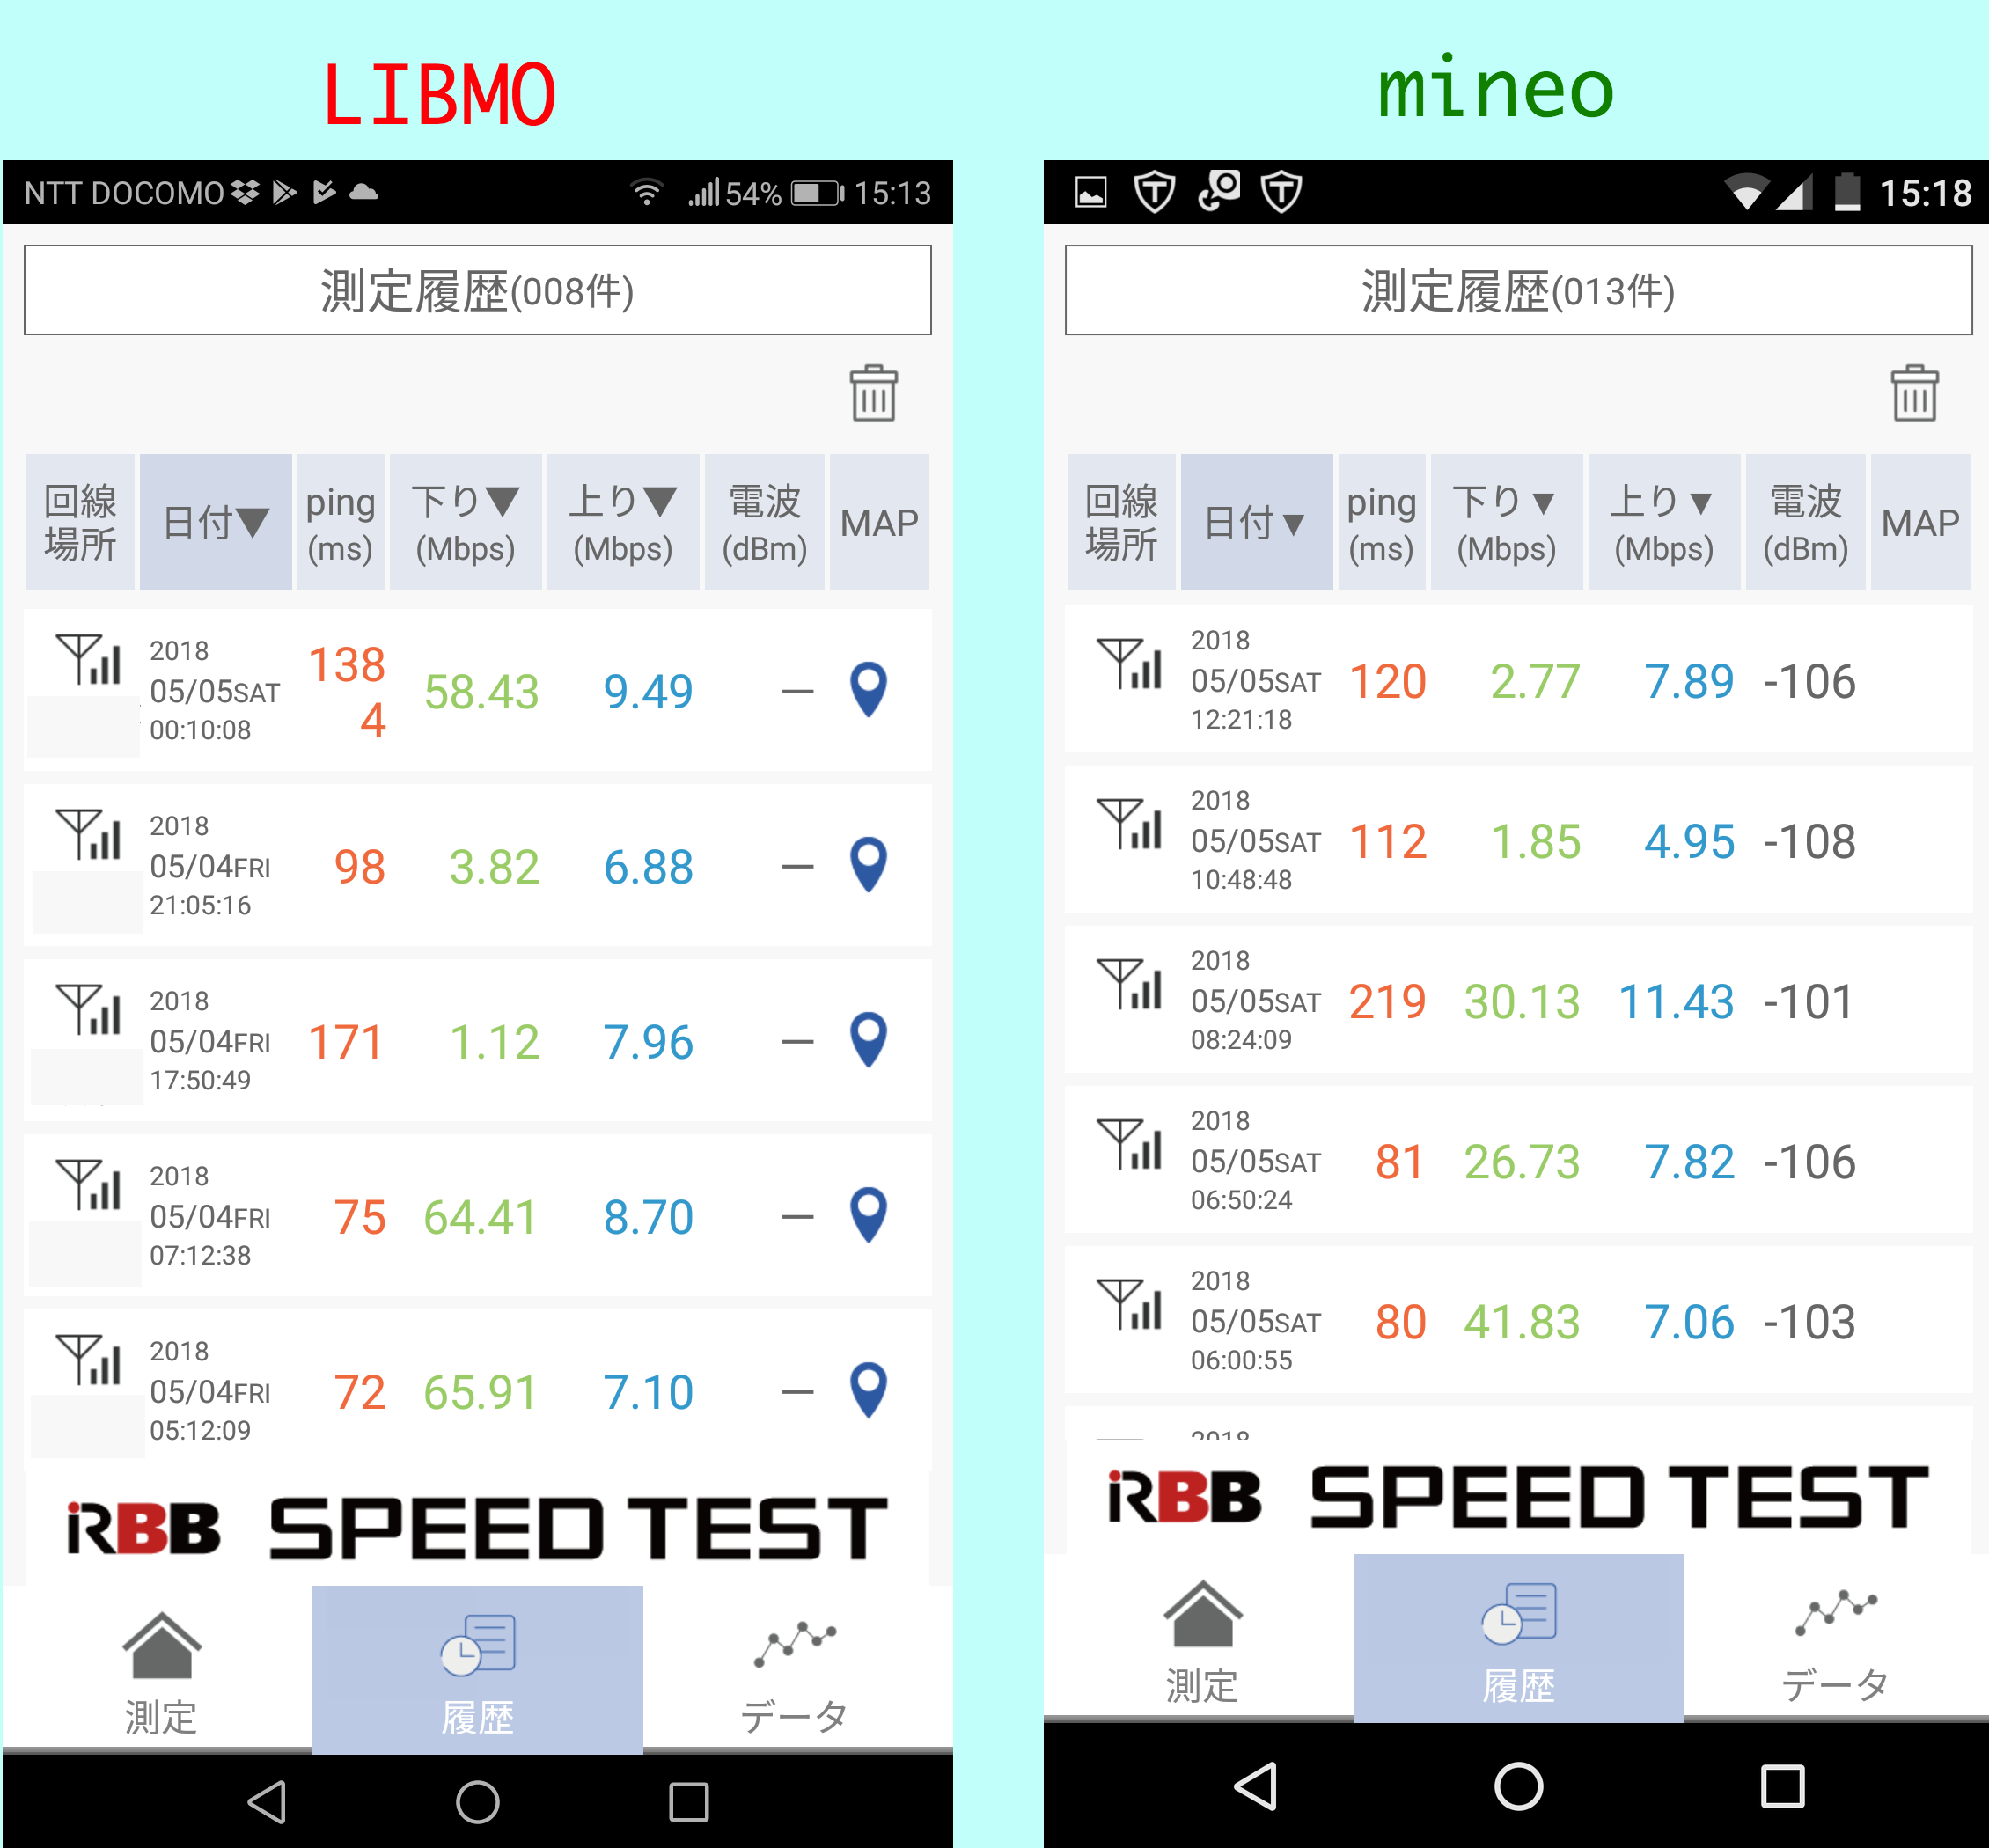 LIBMOとマイネオの回線速度を「RBB SPEED TEST」で比較してみた